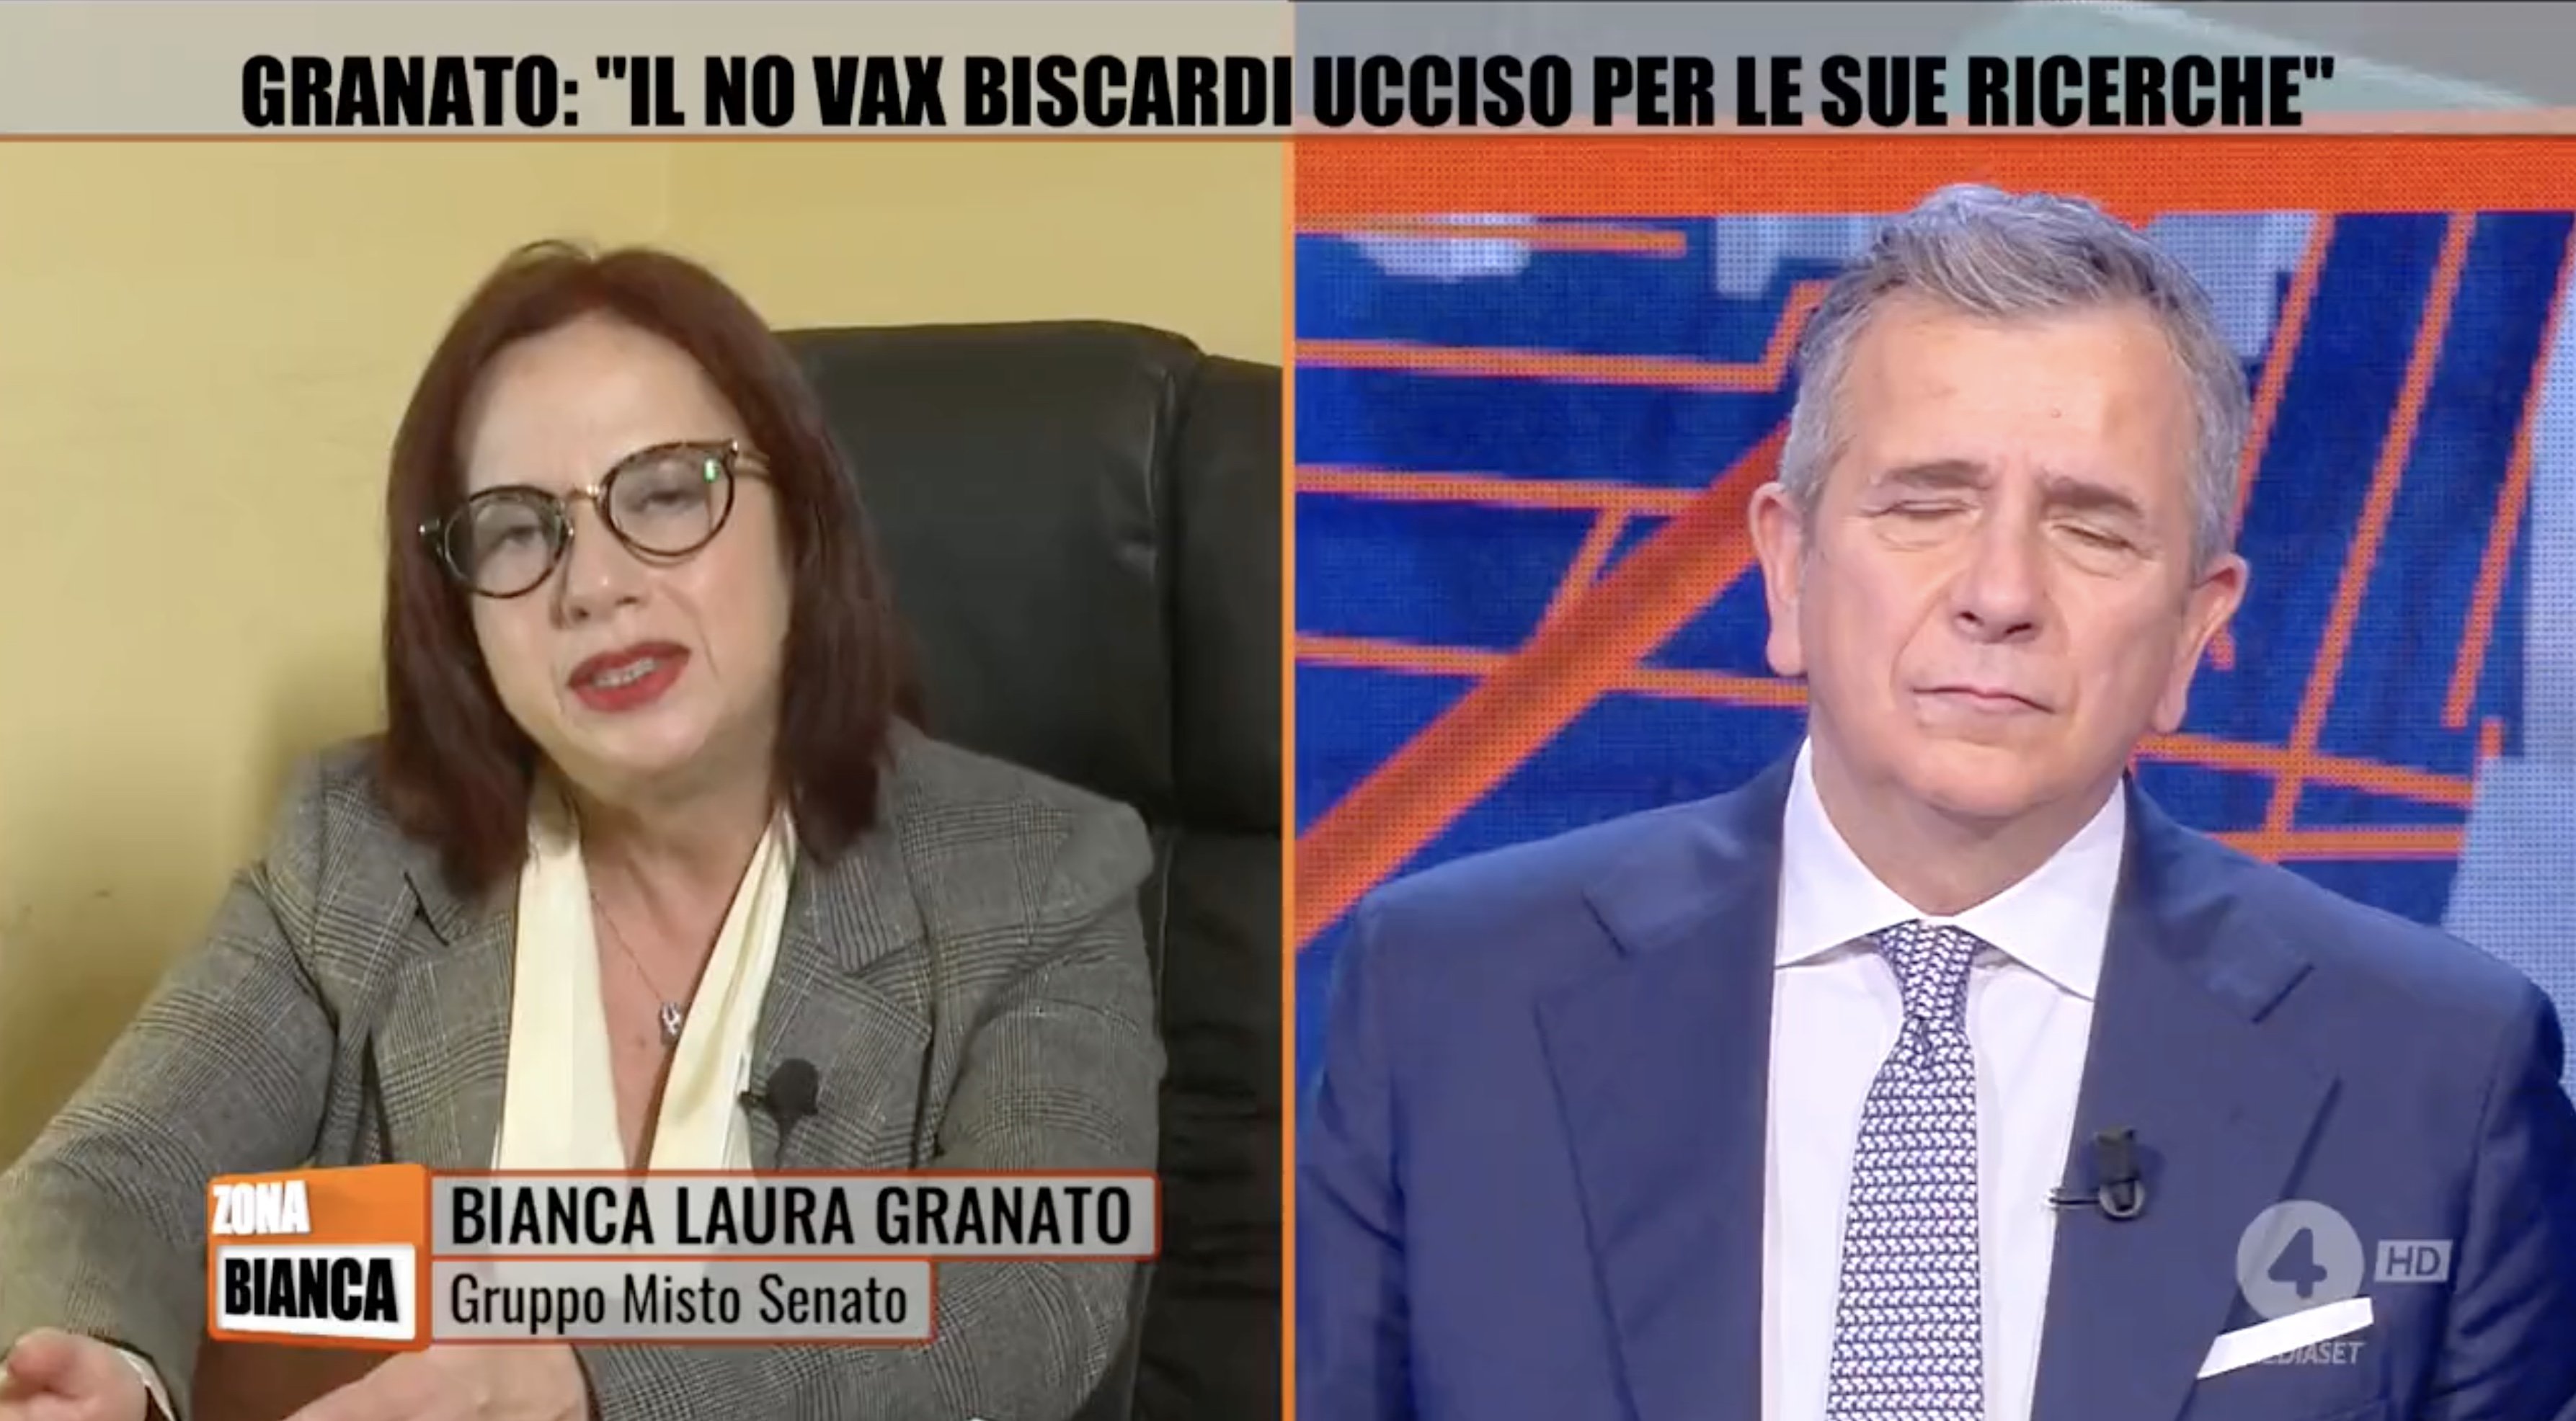 Bianca Laura Granato